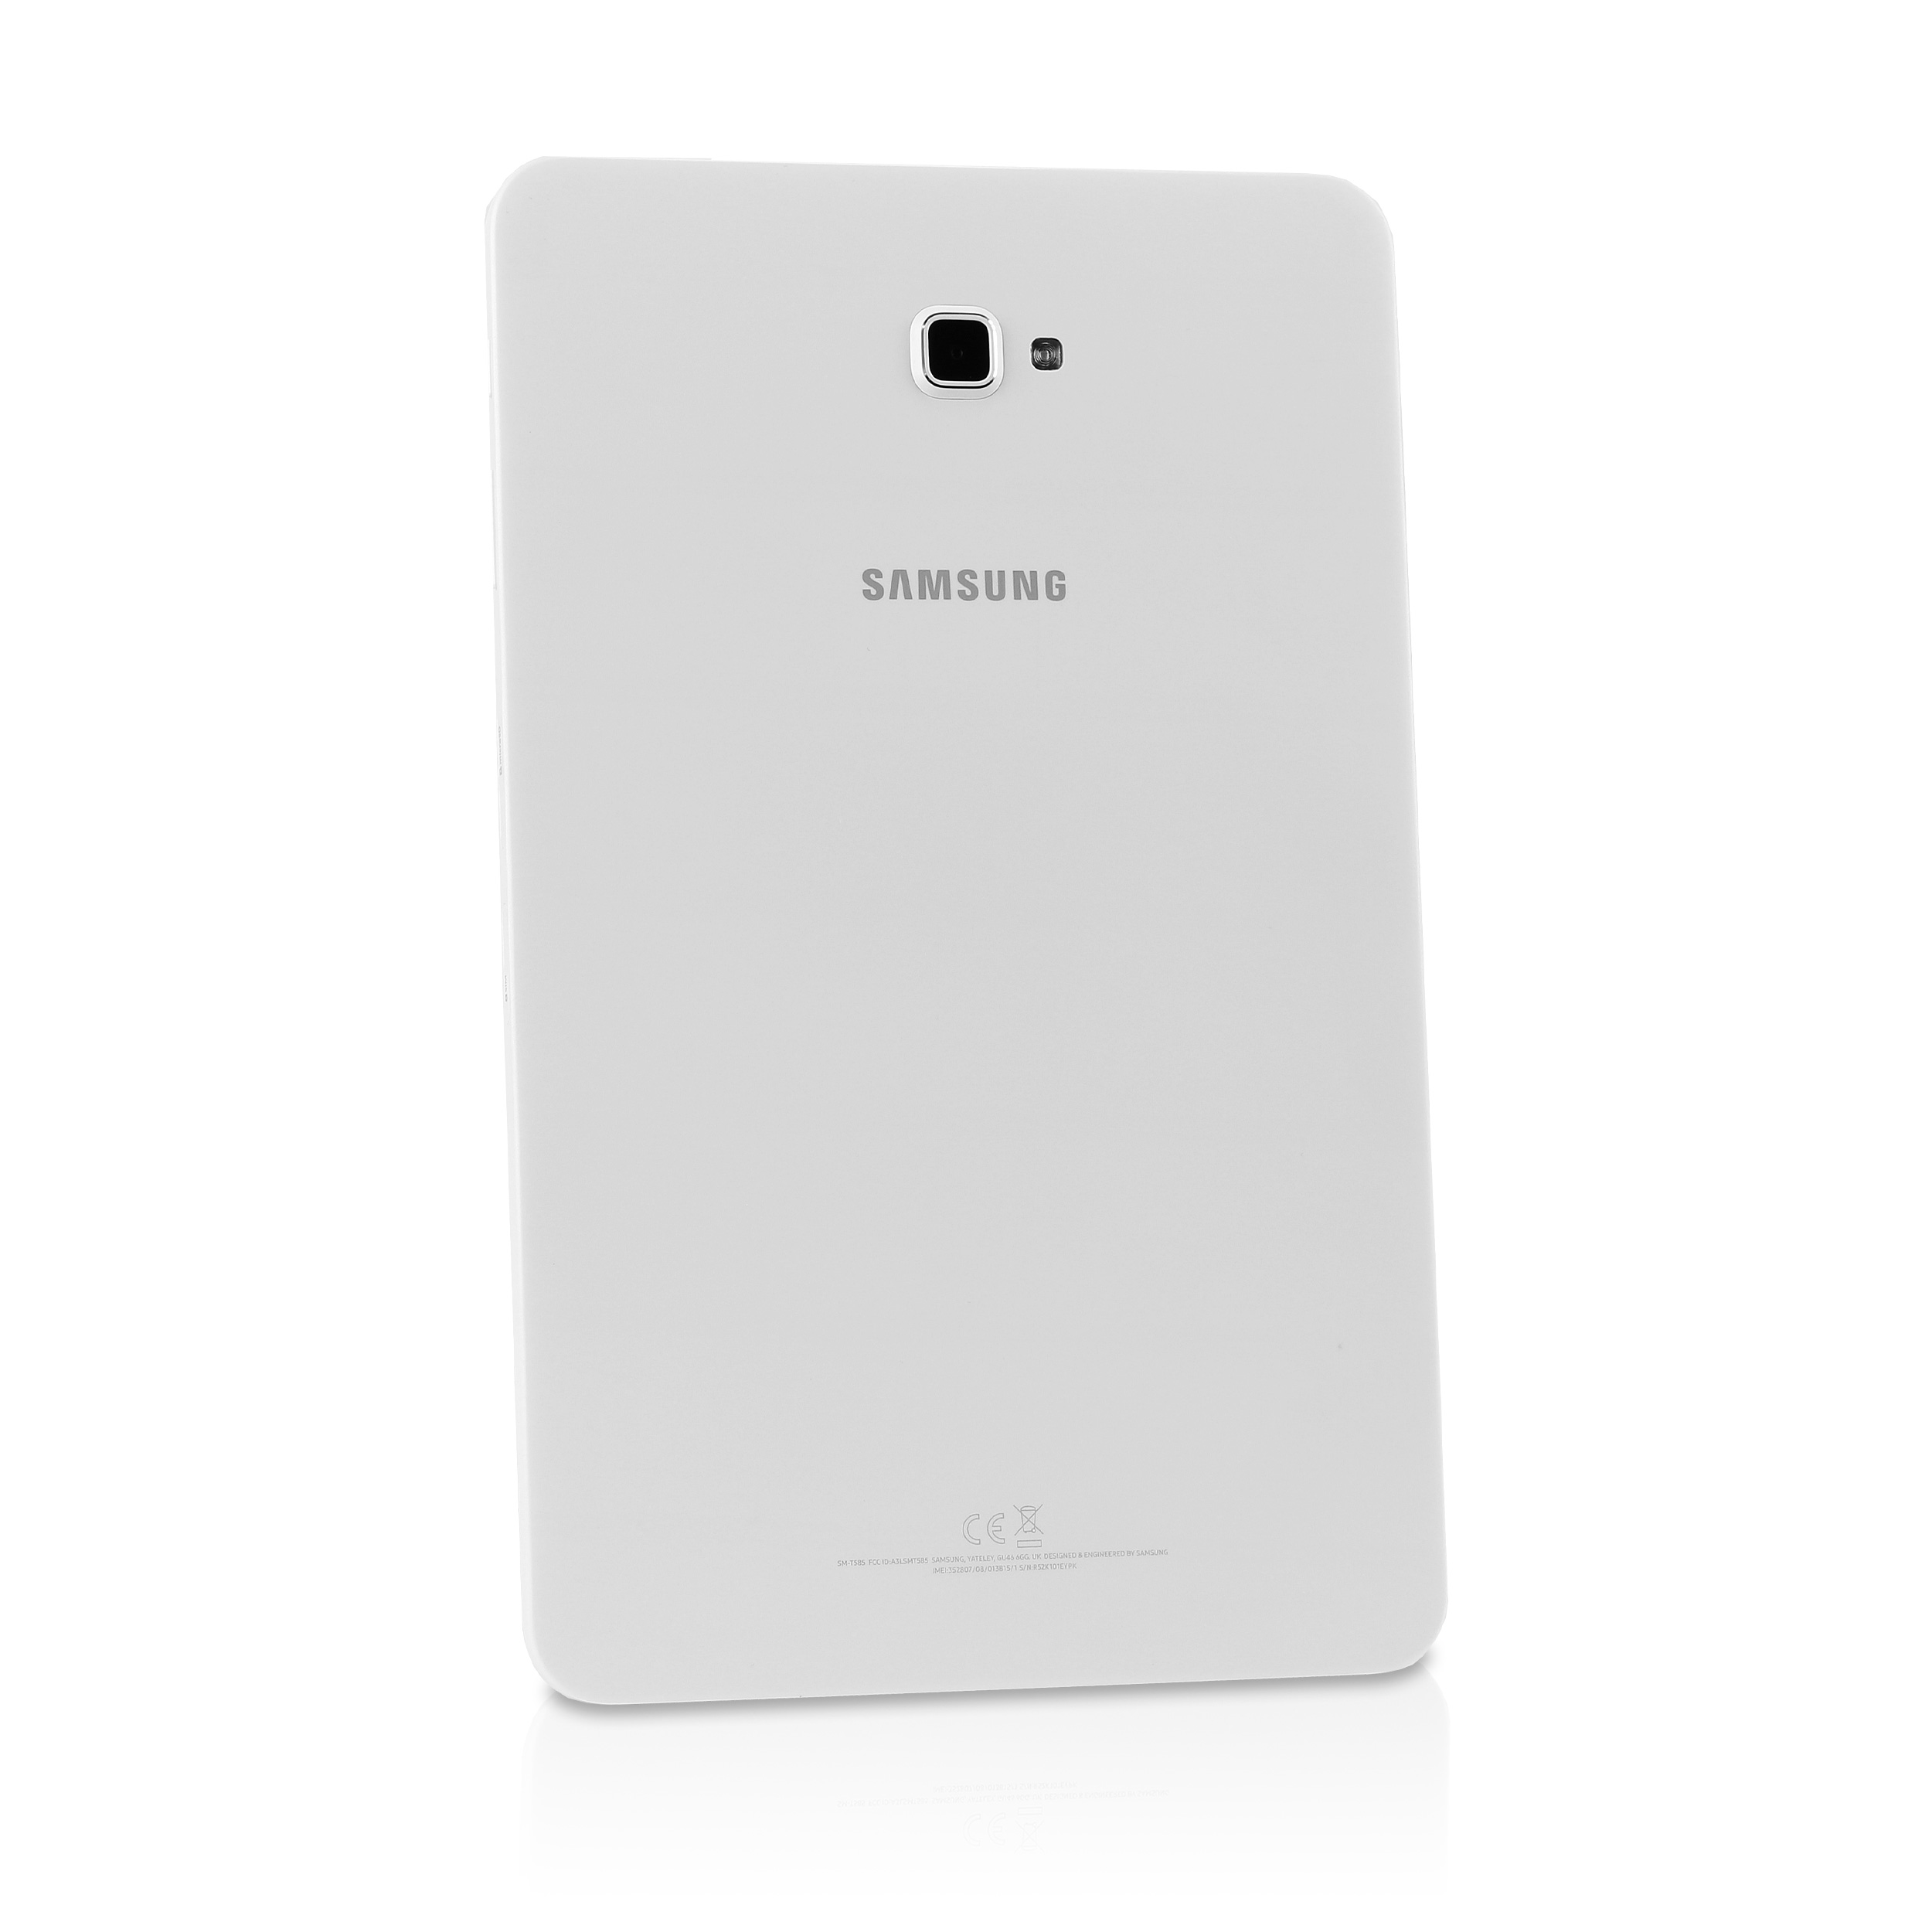 Samsung - Galaxy Tab A 10.1 2016 LTE